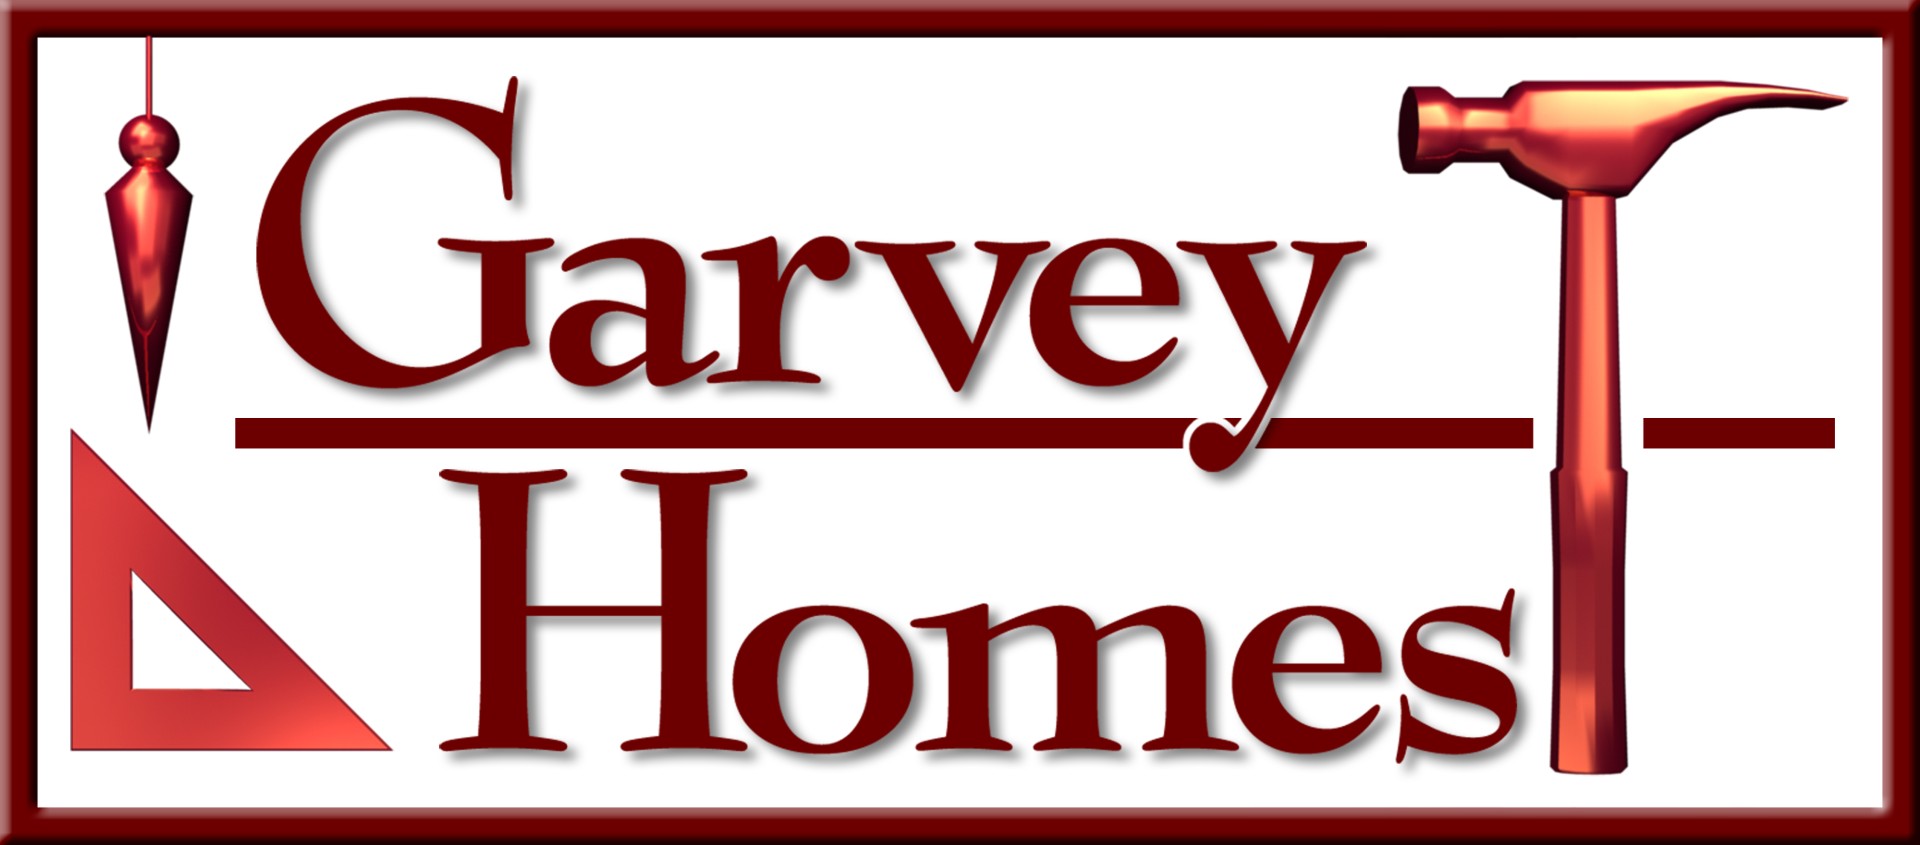 Garvey Homes